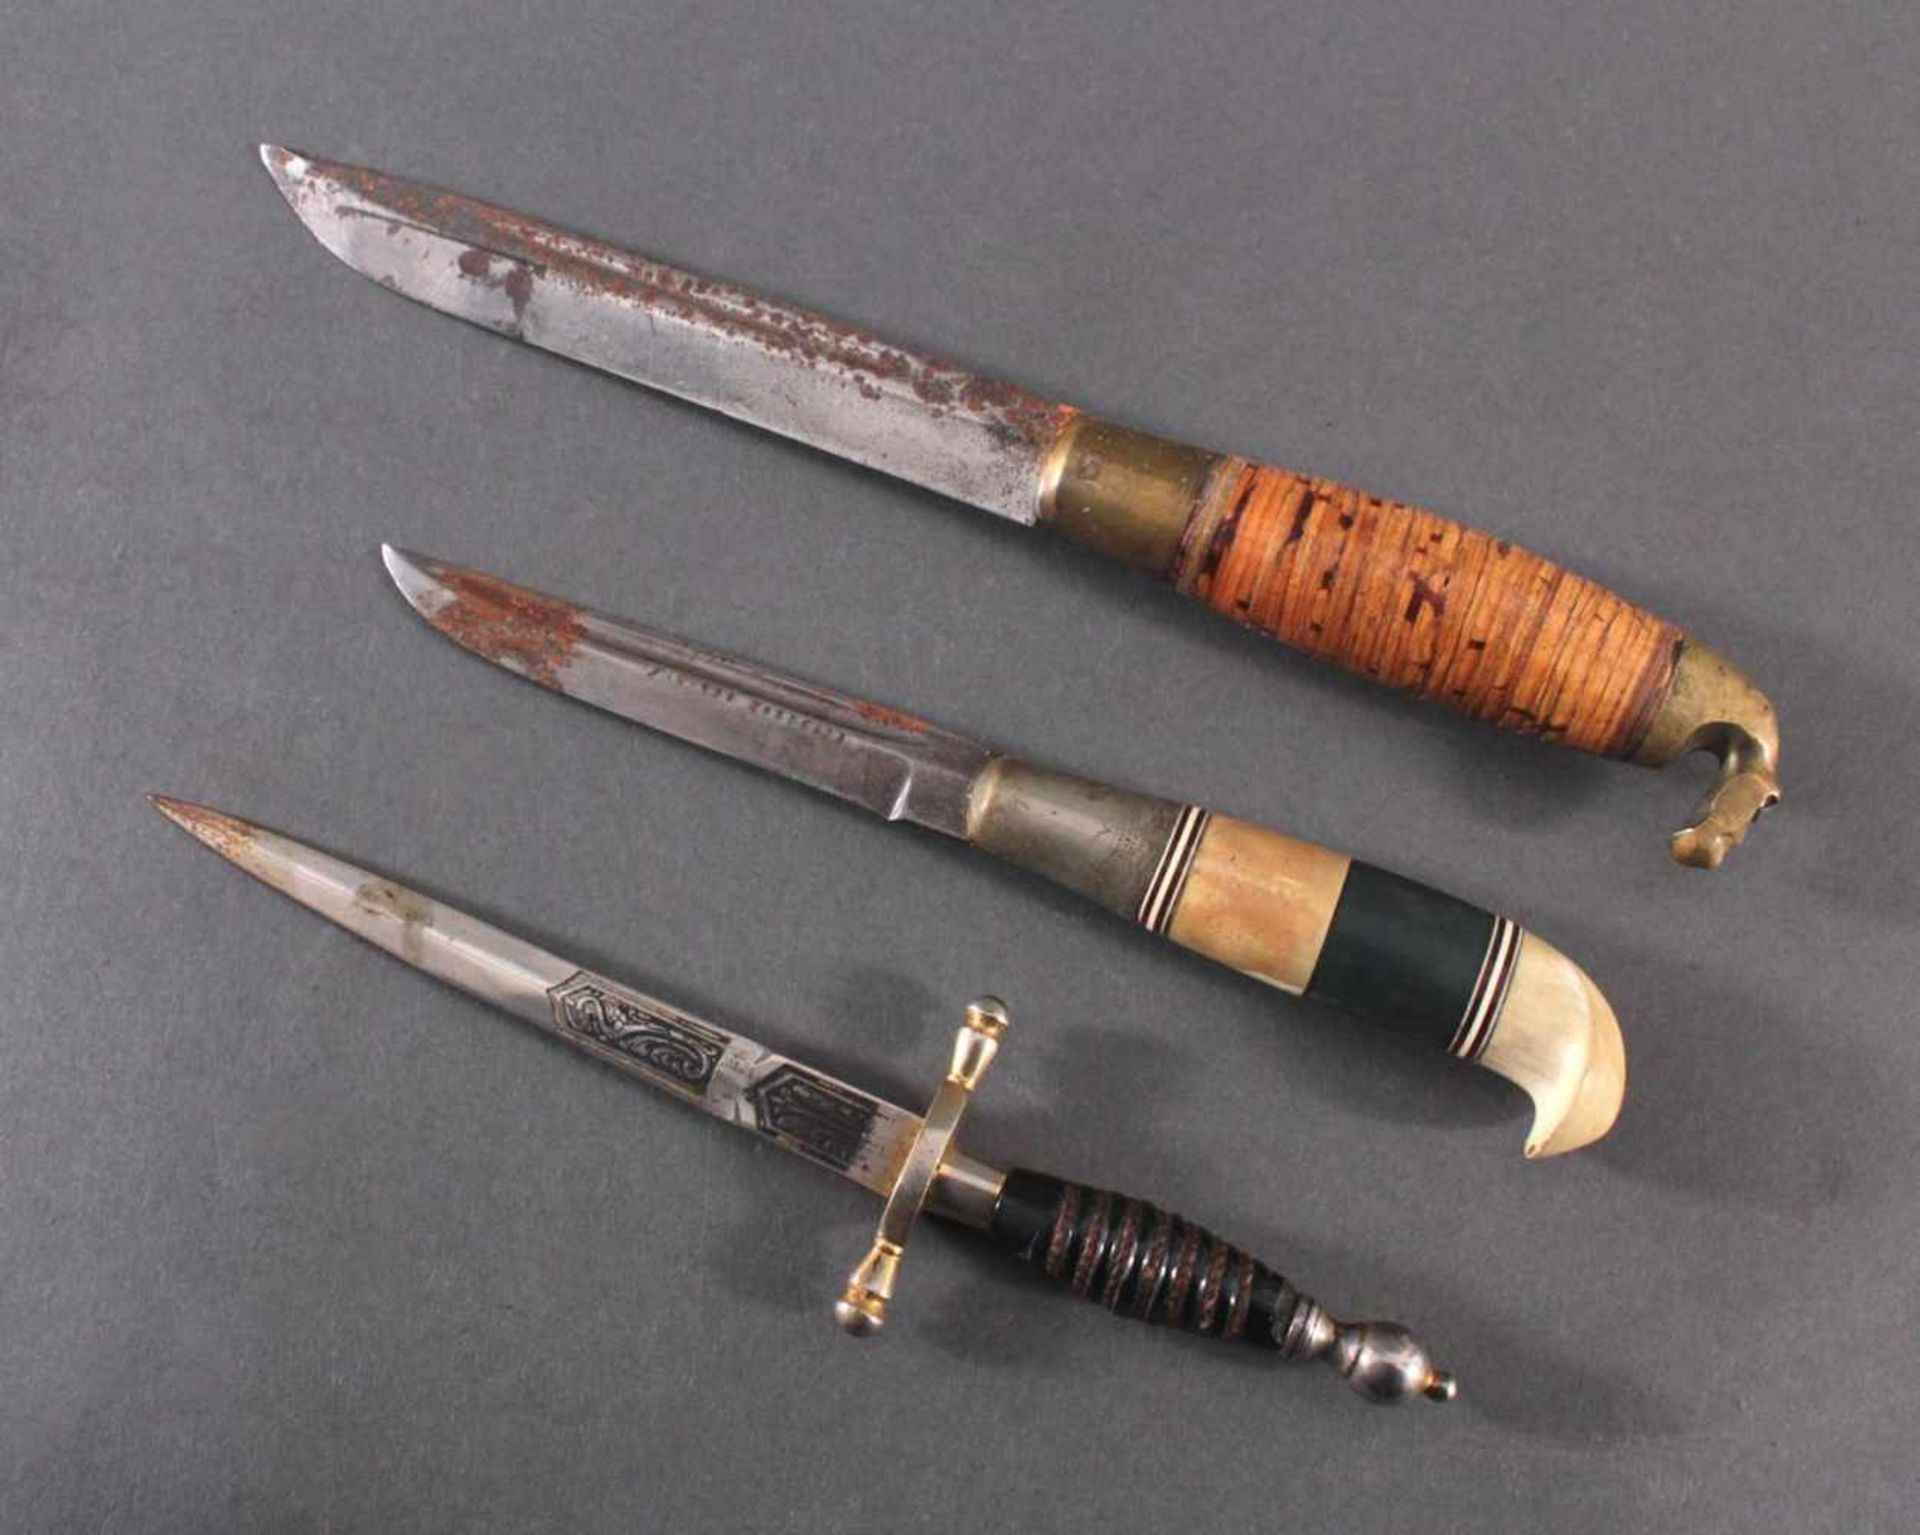 3 Messer2 Messer mit verzierter Klinge, Lederscheide mit Metallaplikationen, Griffe aus Bakelit, - Image 2 of 8